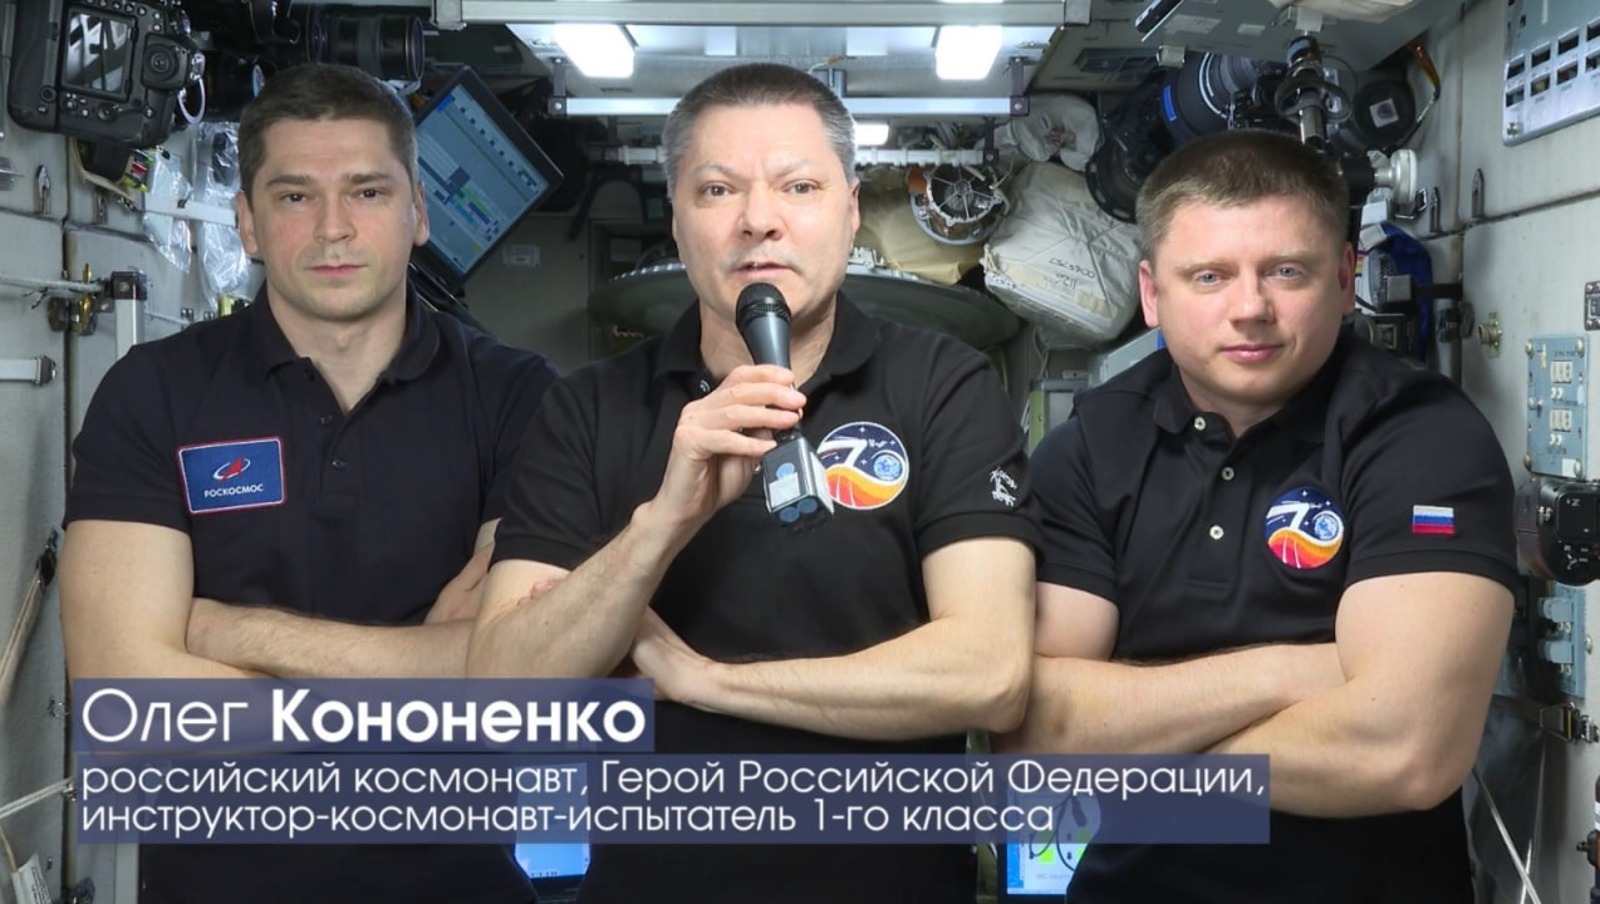 Сегодня в рамках «Дней Уфы» на ВДНХ башкирскую столицу поздравили с 450-летием из космоса